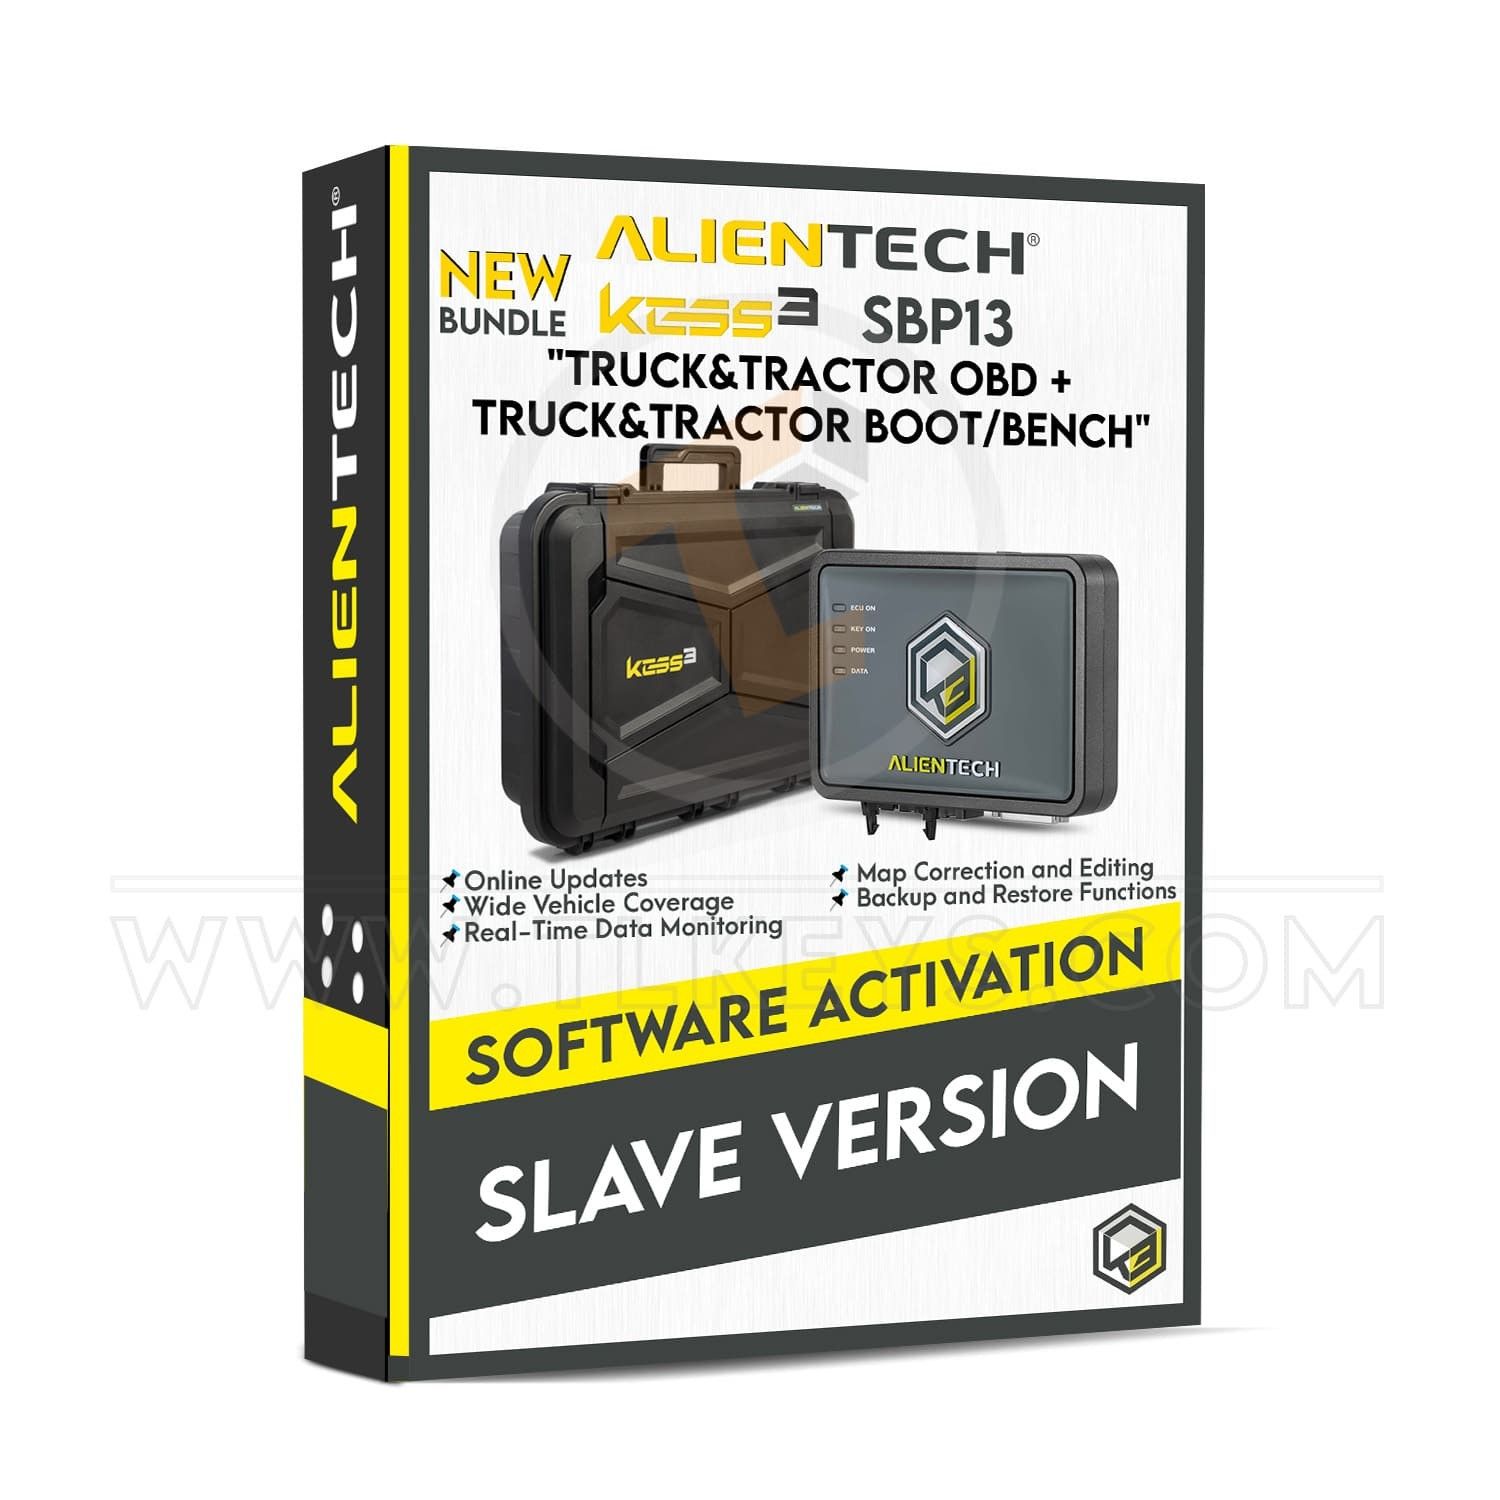 Alientech Slave version new bundle software